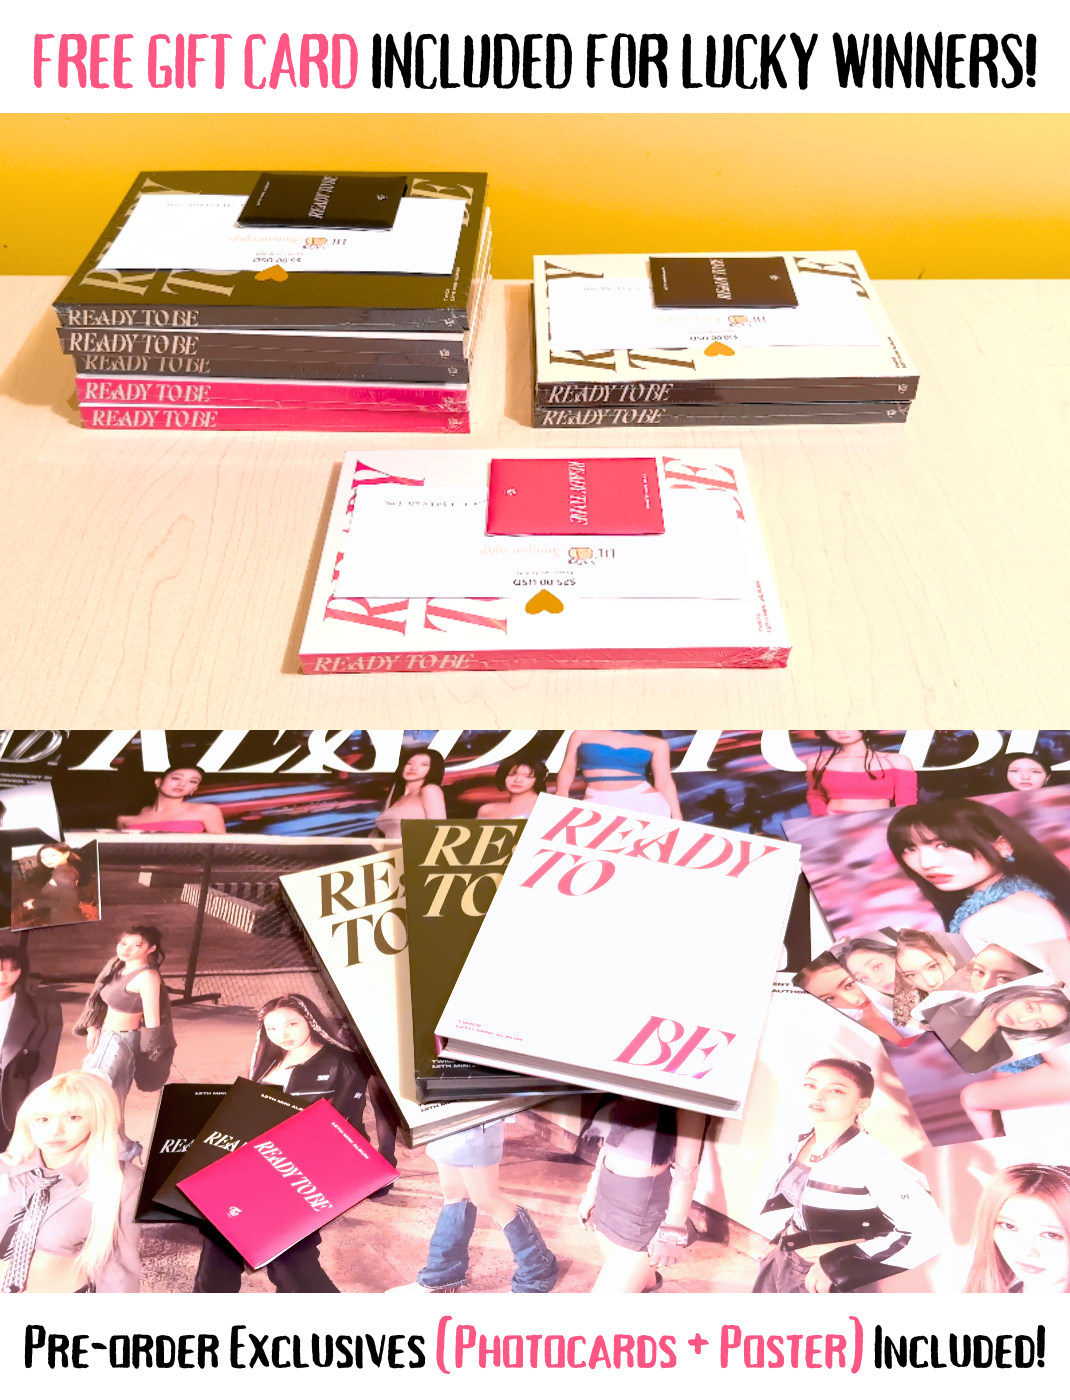 TWICE – Ready To Be (12th Mini Album) + Poster – Bak Bak K-Pop Store